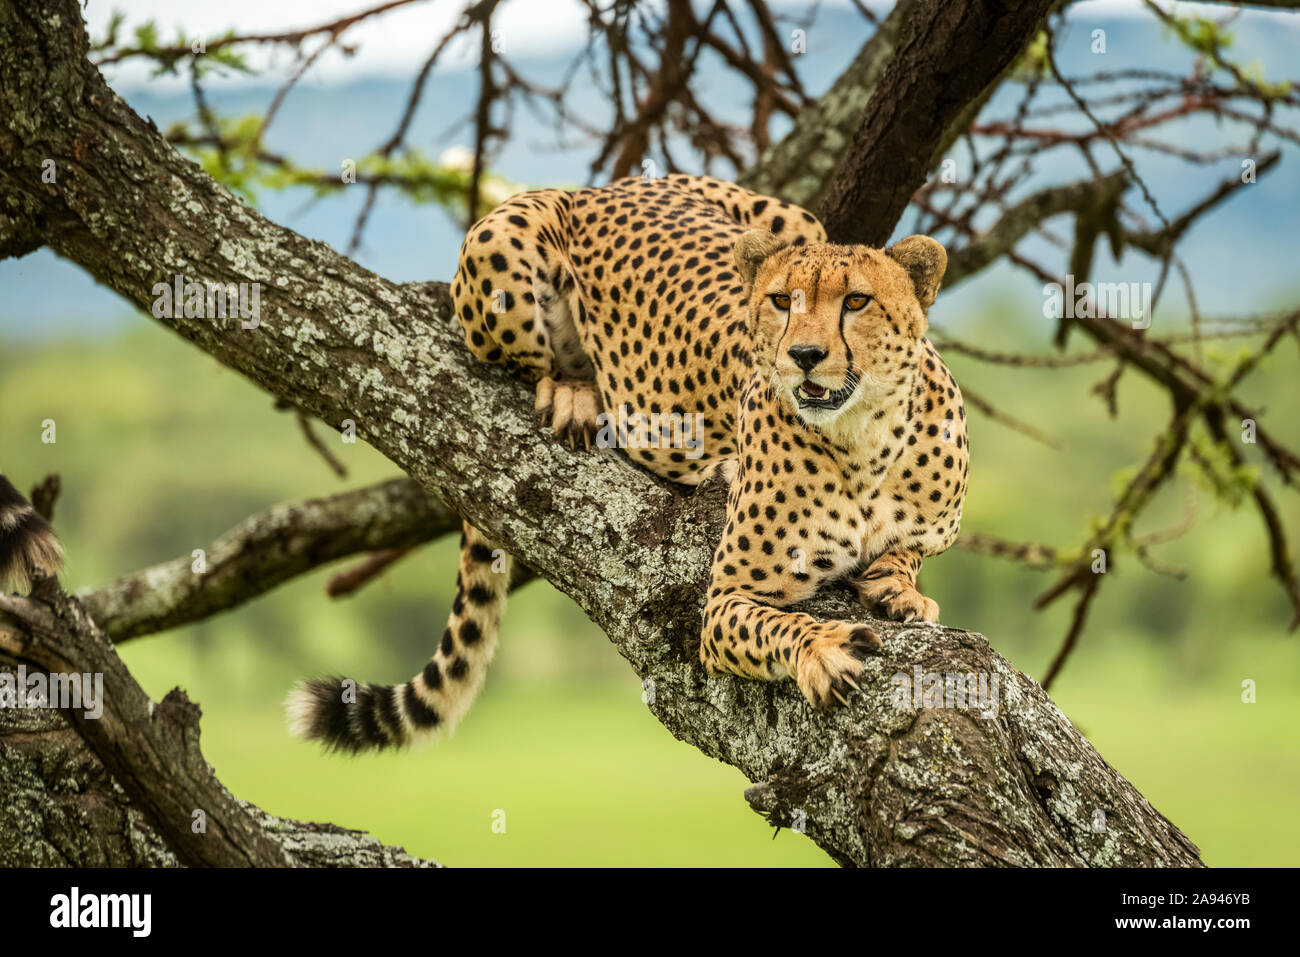 Male cheetah (Acinonyx jubatus) se encuentra en el árbol mirando hacia fuera, Klein's Camp, Parque Nacional Serengeti; Tanzania Foto de stock